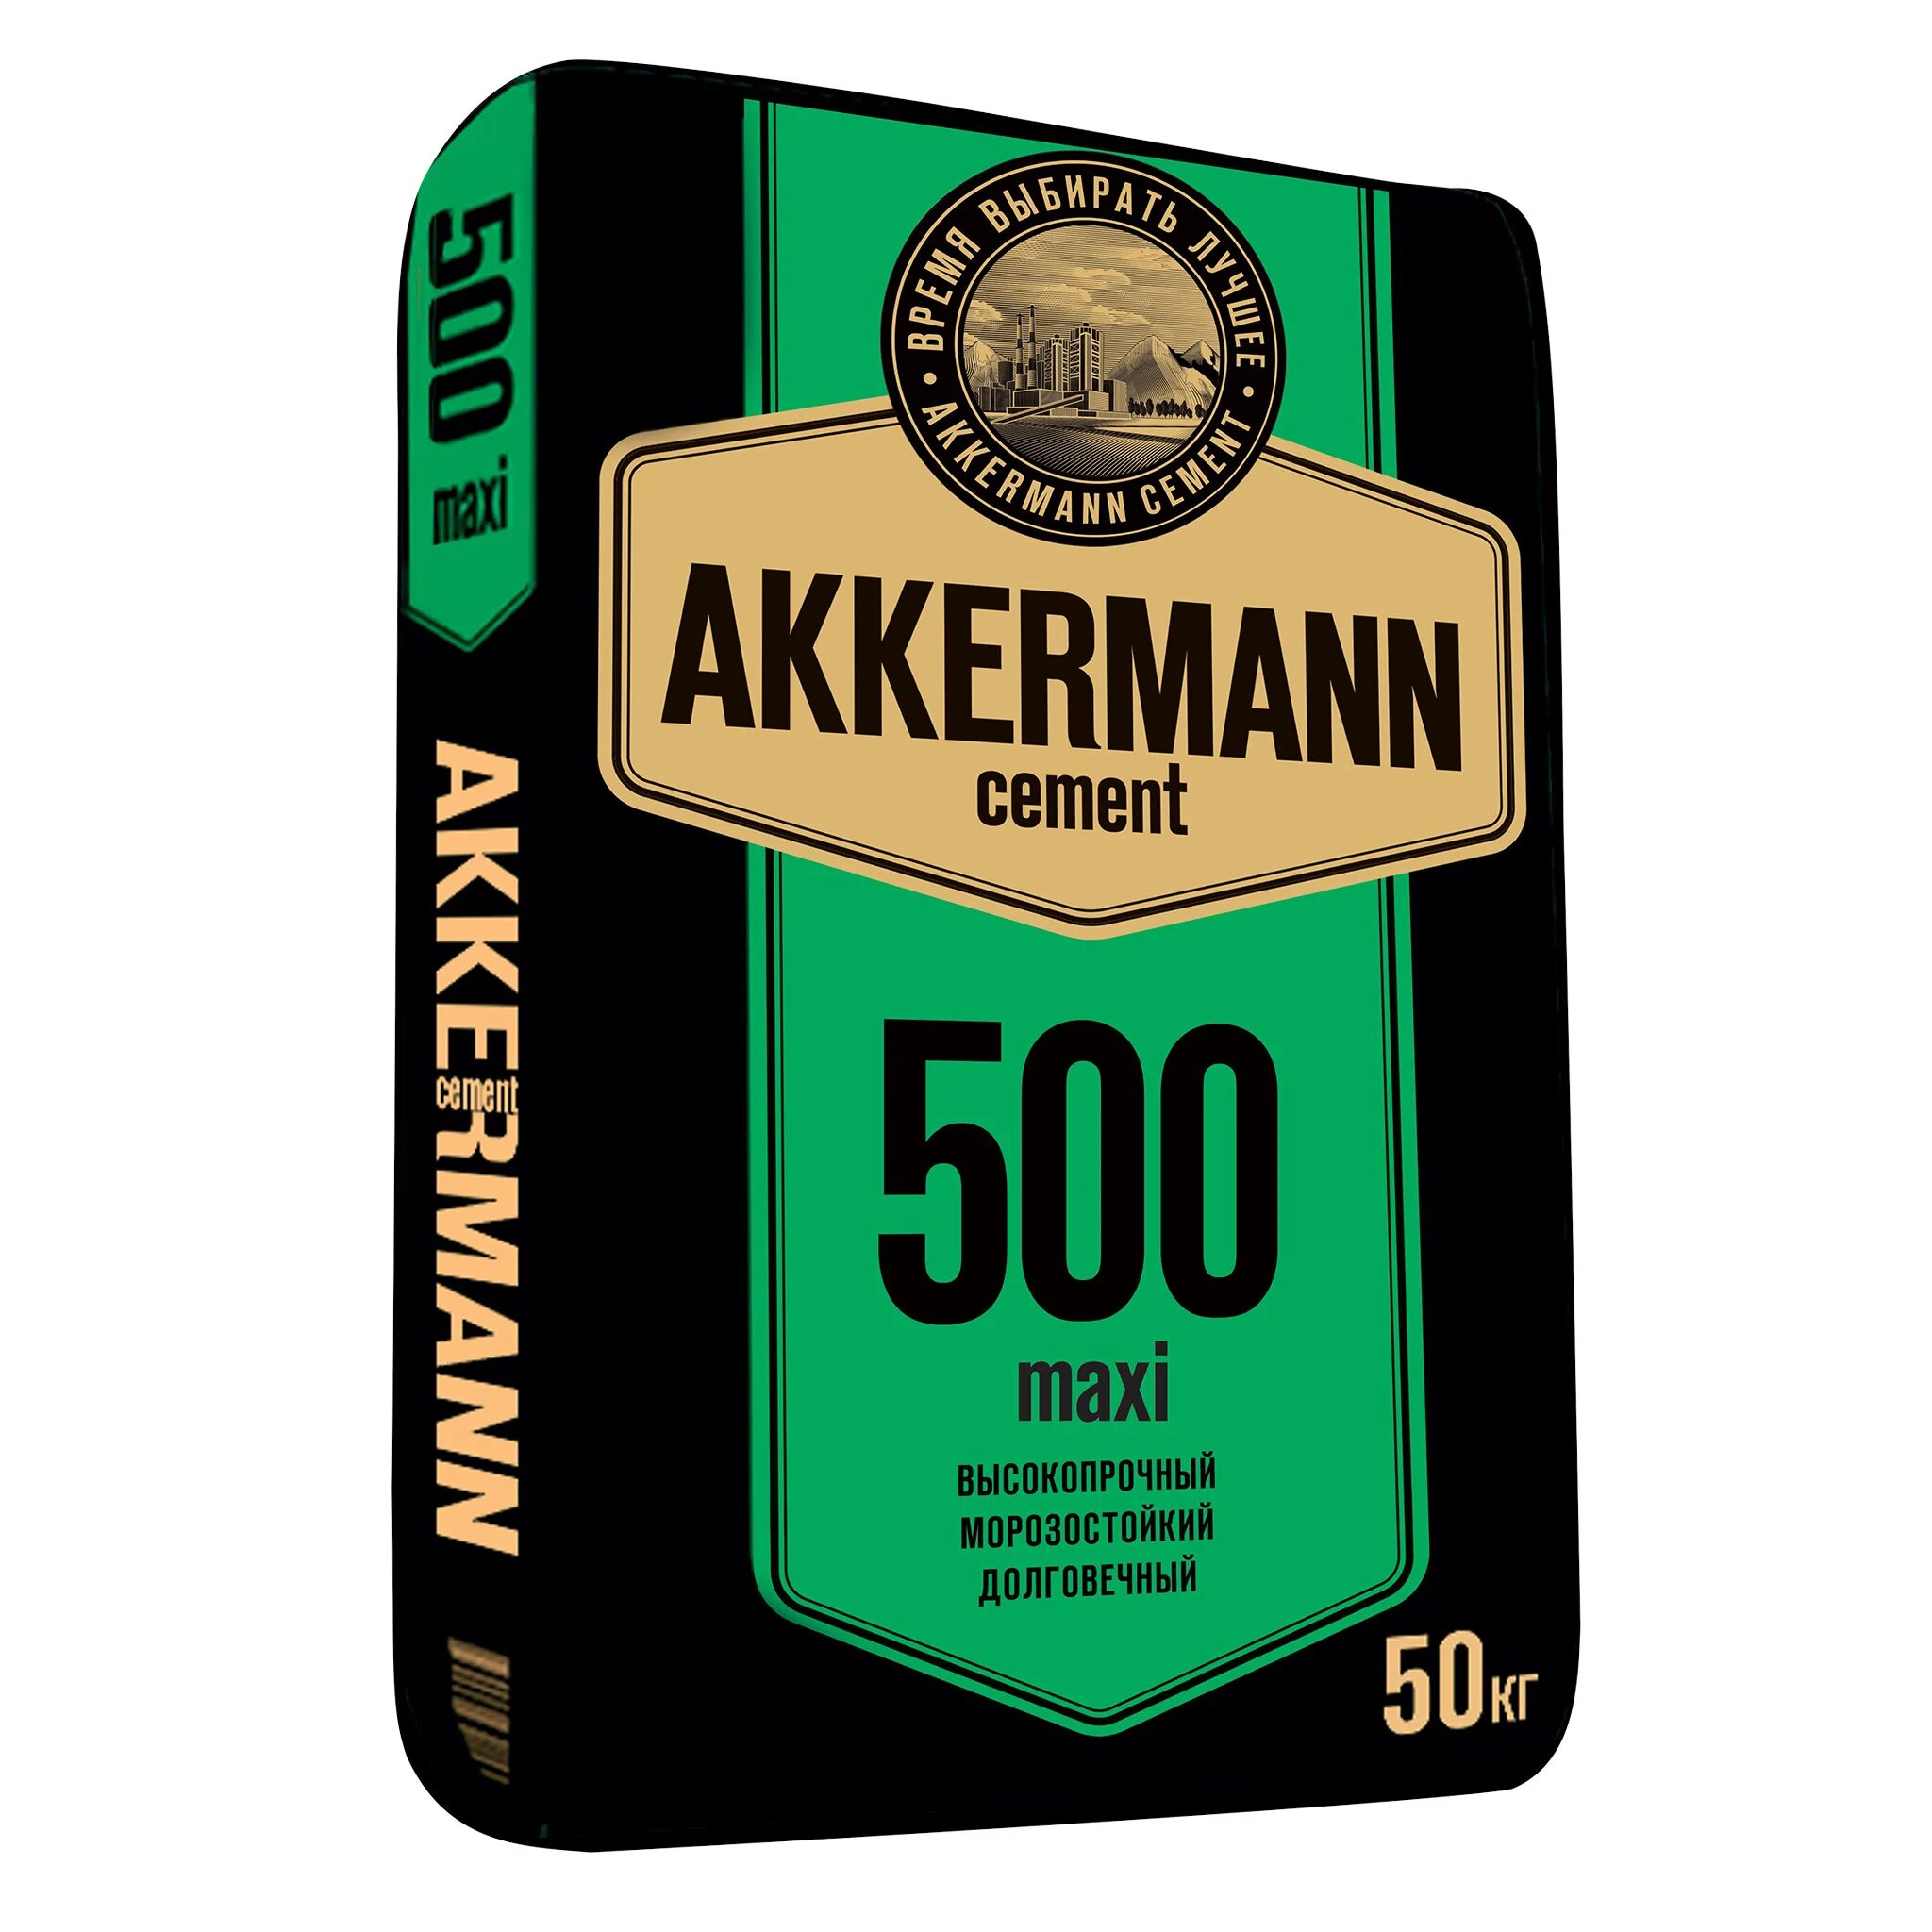 Maxi 500. Цемент Akkermann м500. Цемент м600 Akkermann 50 кг. Цемент ЮУГПК Akkermann 500 50кг. Цемент Аккерман 500 25 кг.